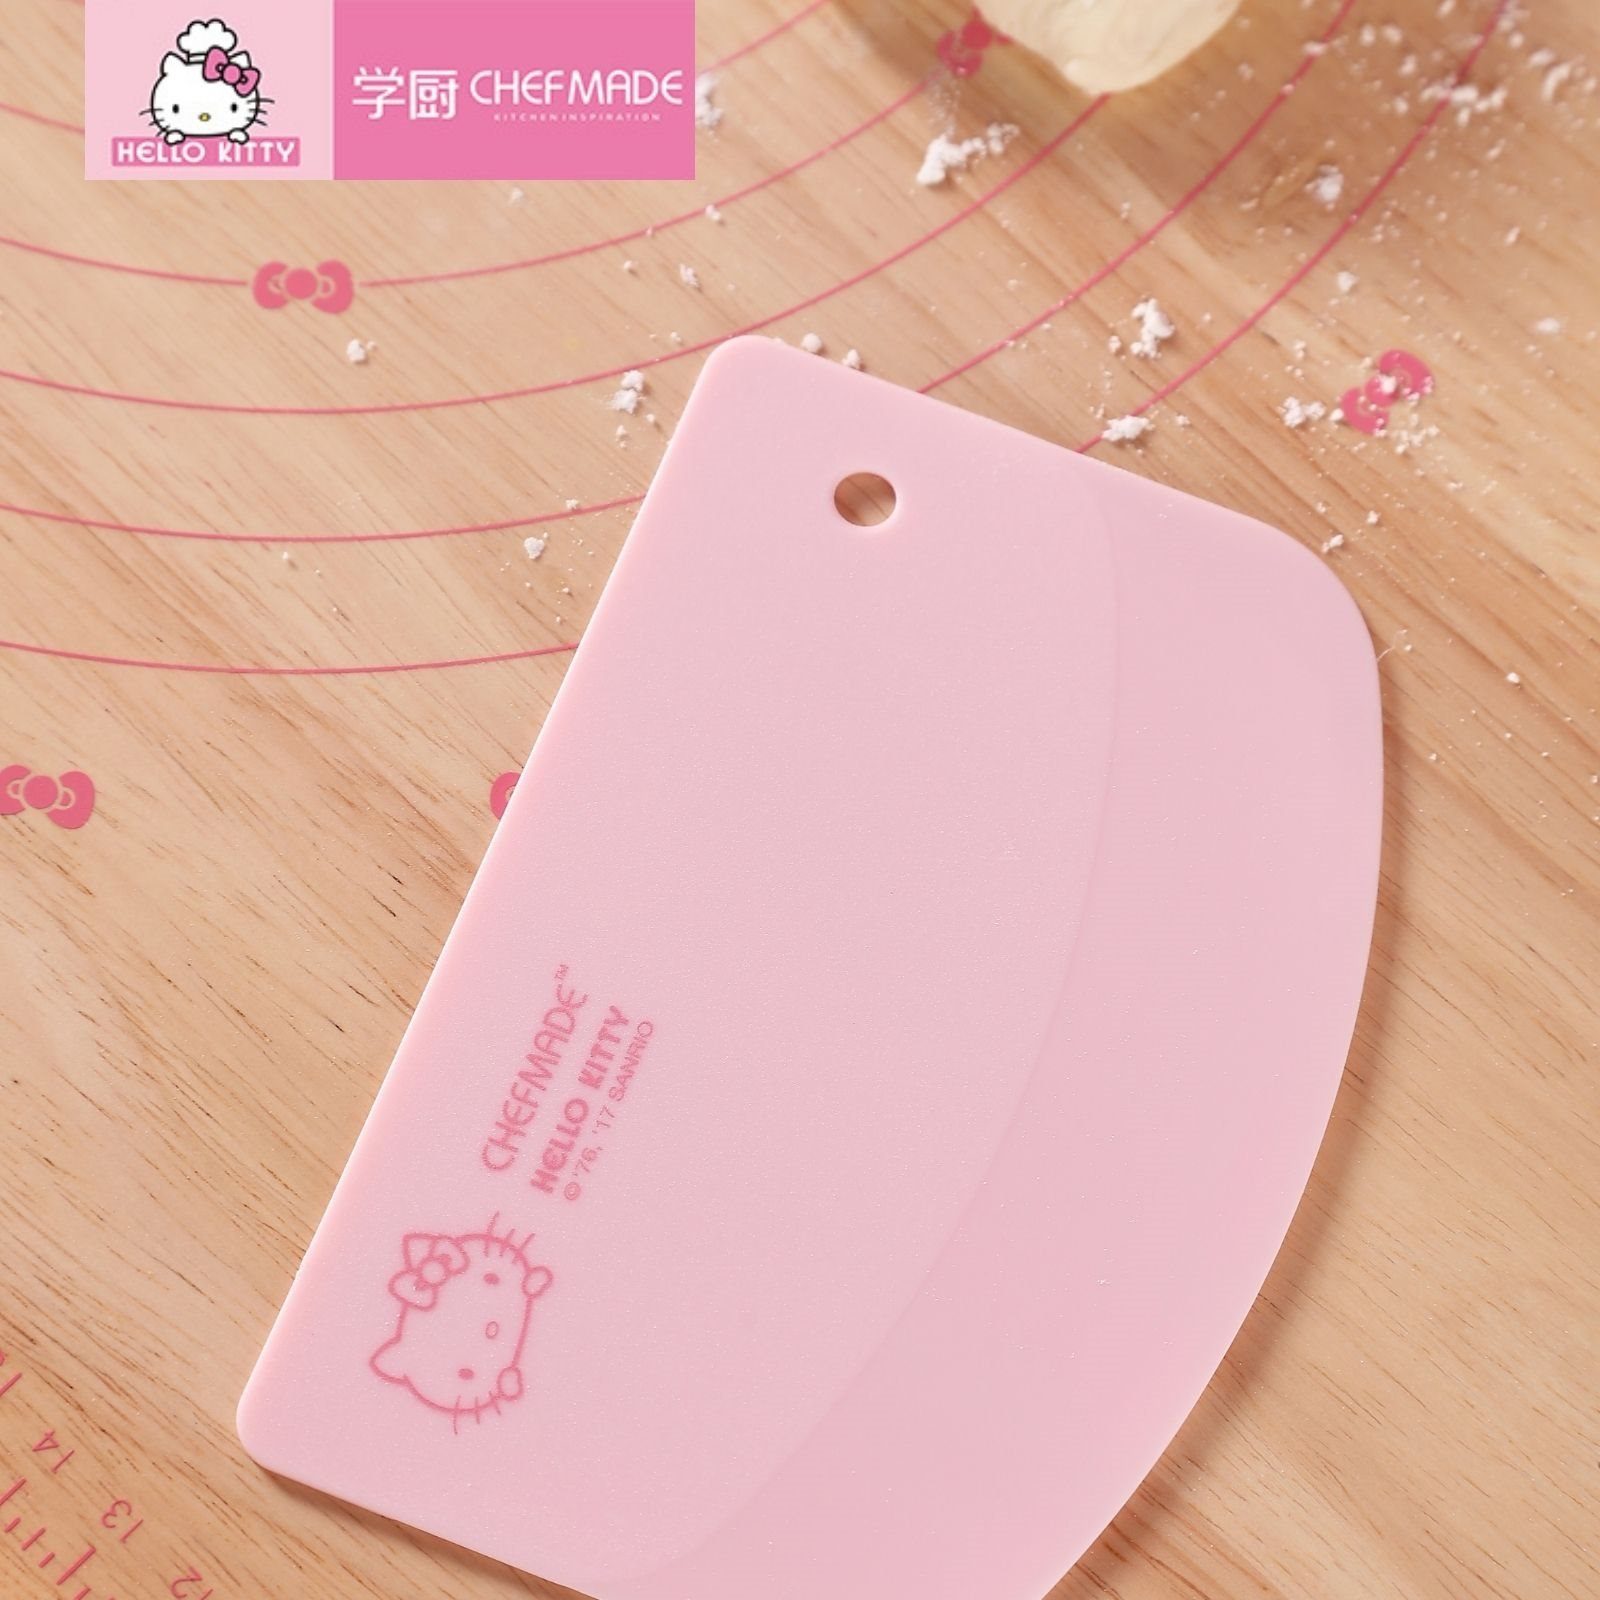 Teigschaber Silkon Kitty Seite, mit einer Hello Teigkarte Teigspachtel biegsam - Teigschaber runden Silikon Chefmade